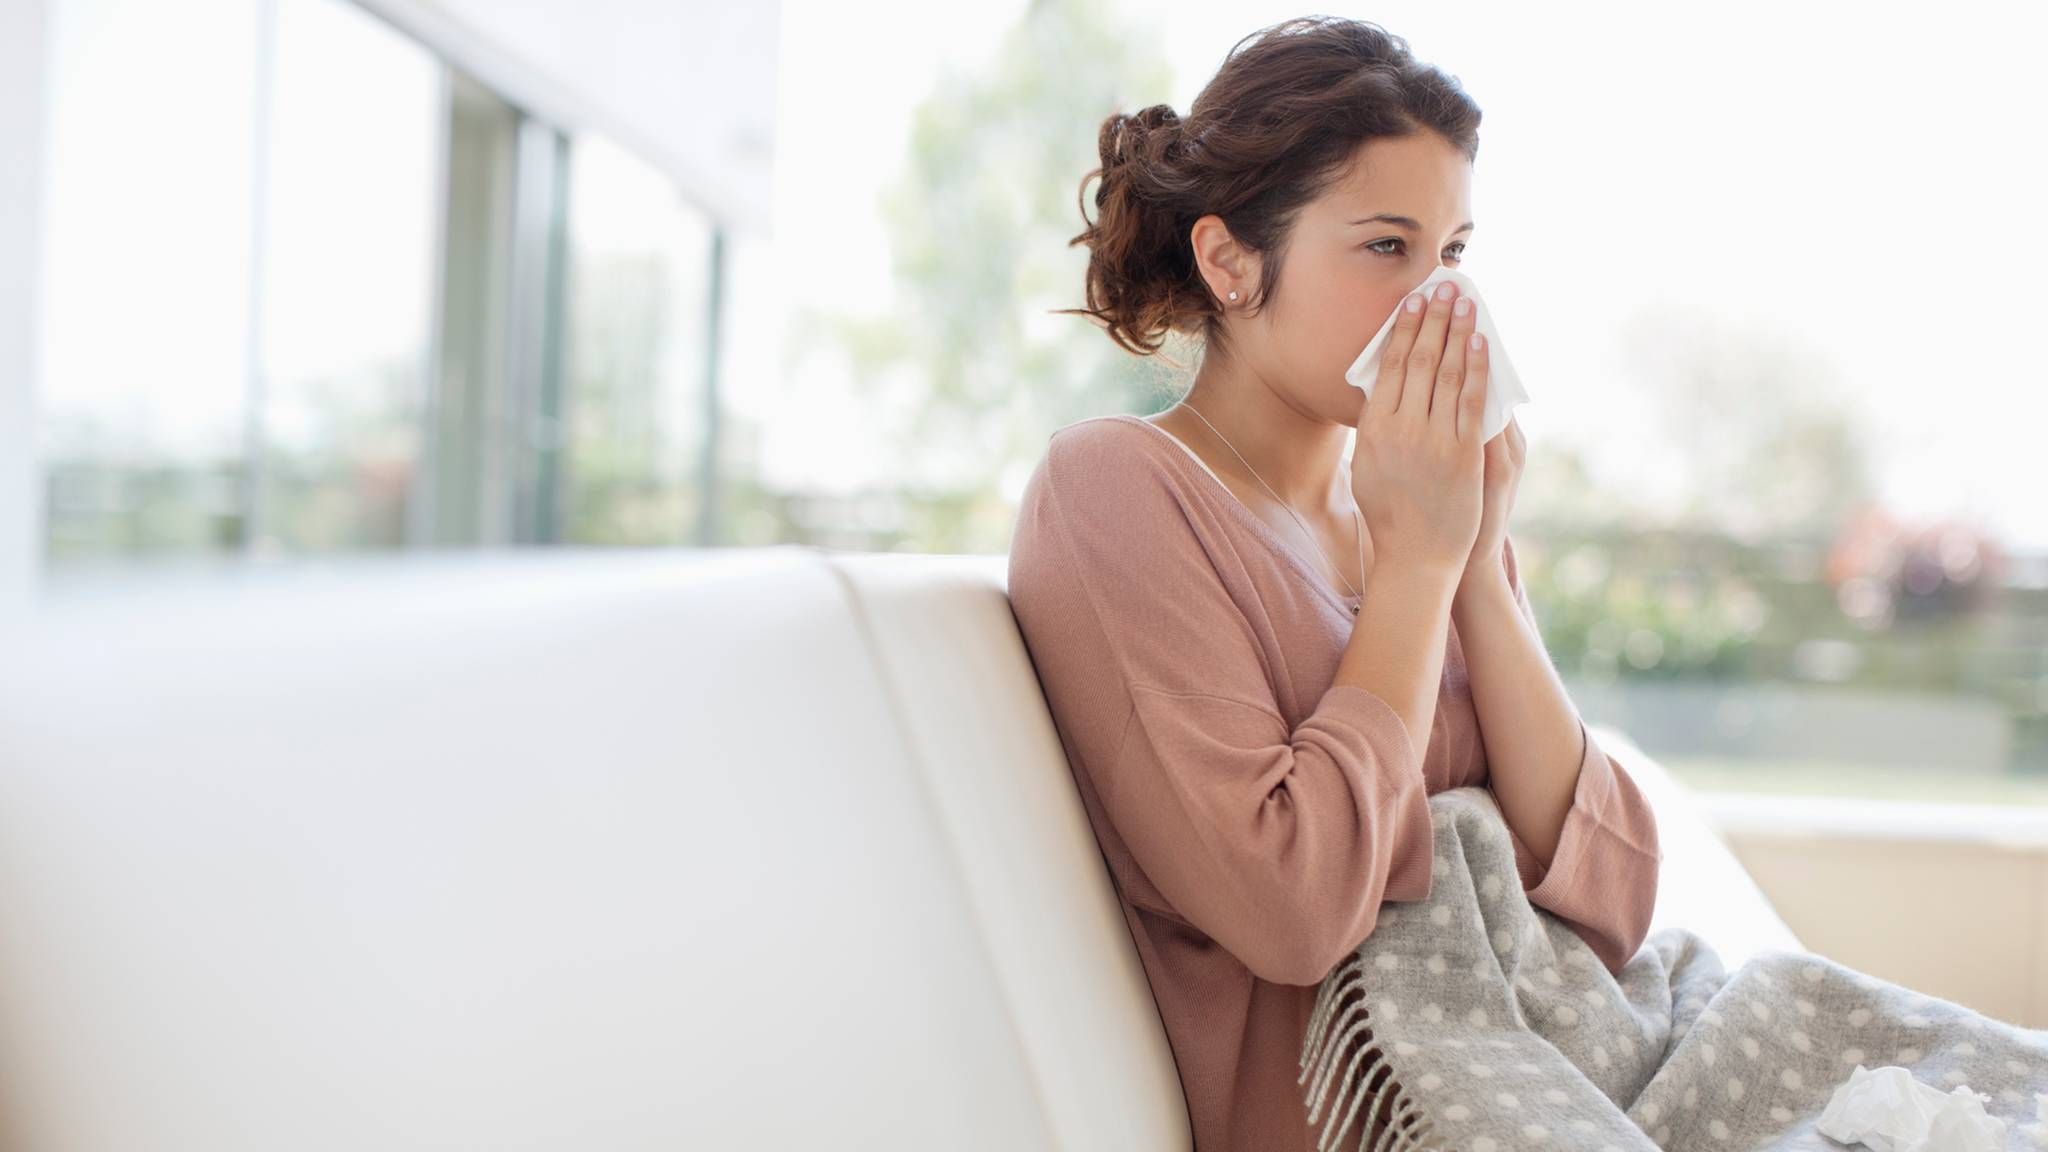 Аллергия на пыль и пылевые клещи – симптомы, что делать